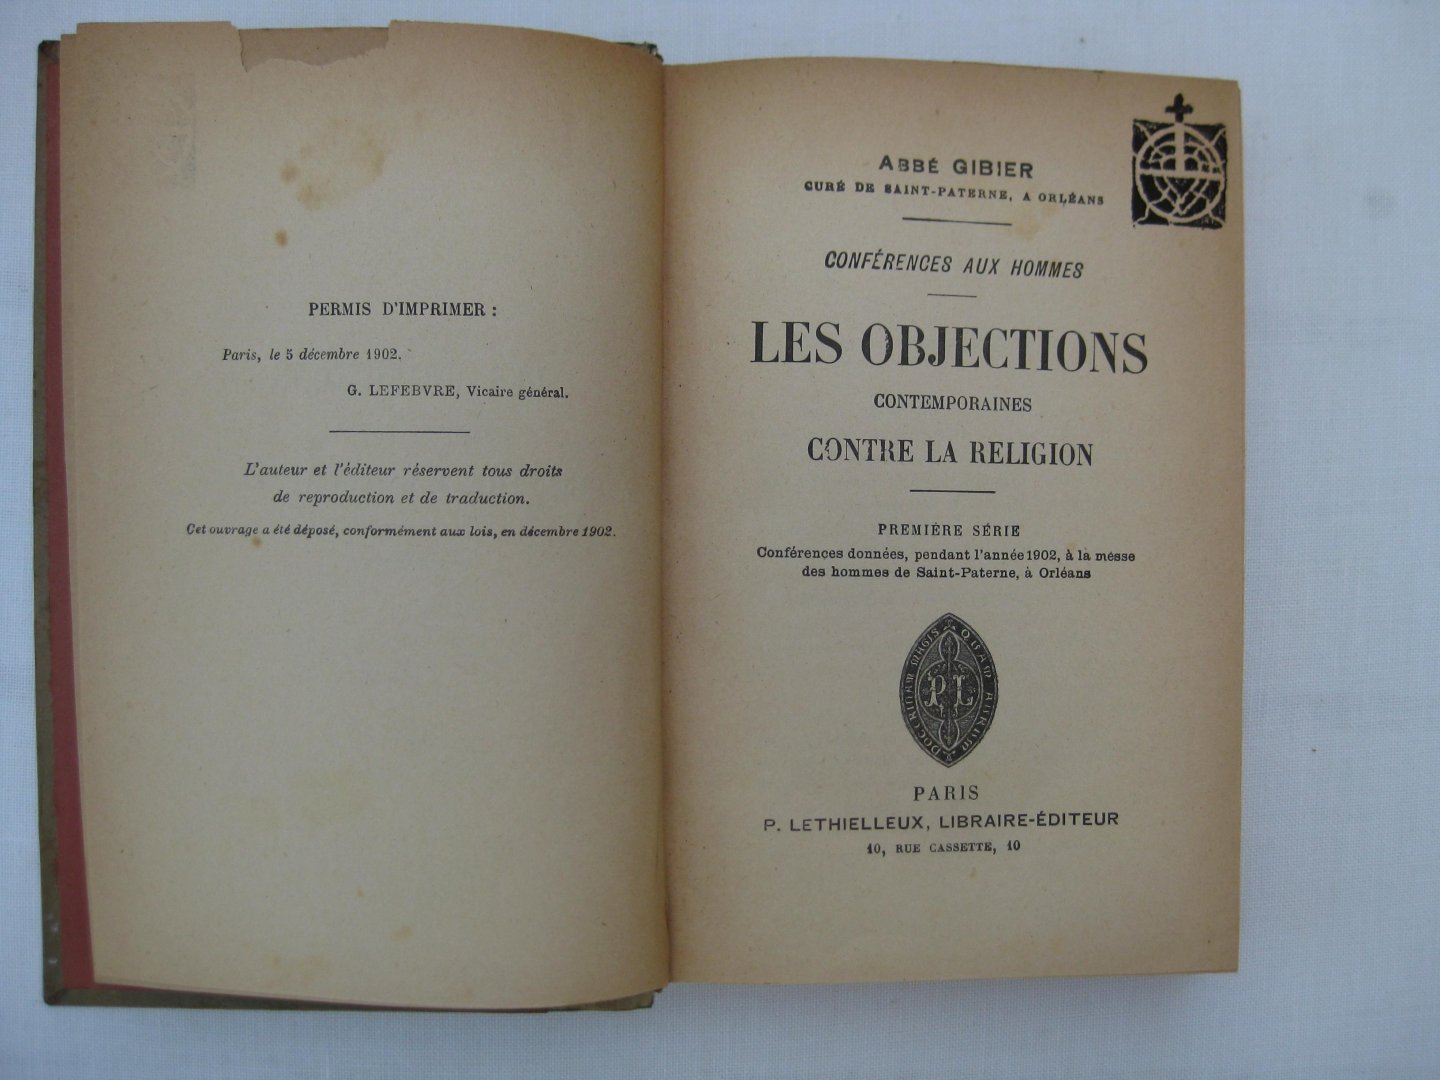 Gibier, Abbé - Les Objections contemporaines contre la religion. Première série:Conférences données, pendant l'année 1902, à la messe des hommes de Saint-Paterne, à Orléans.